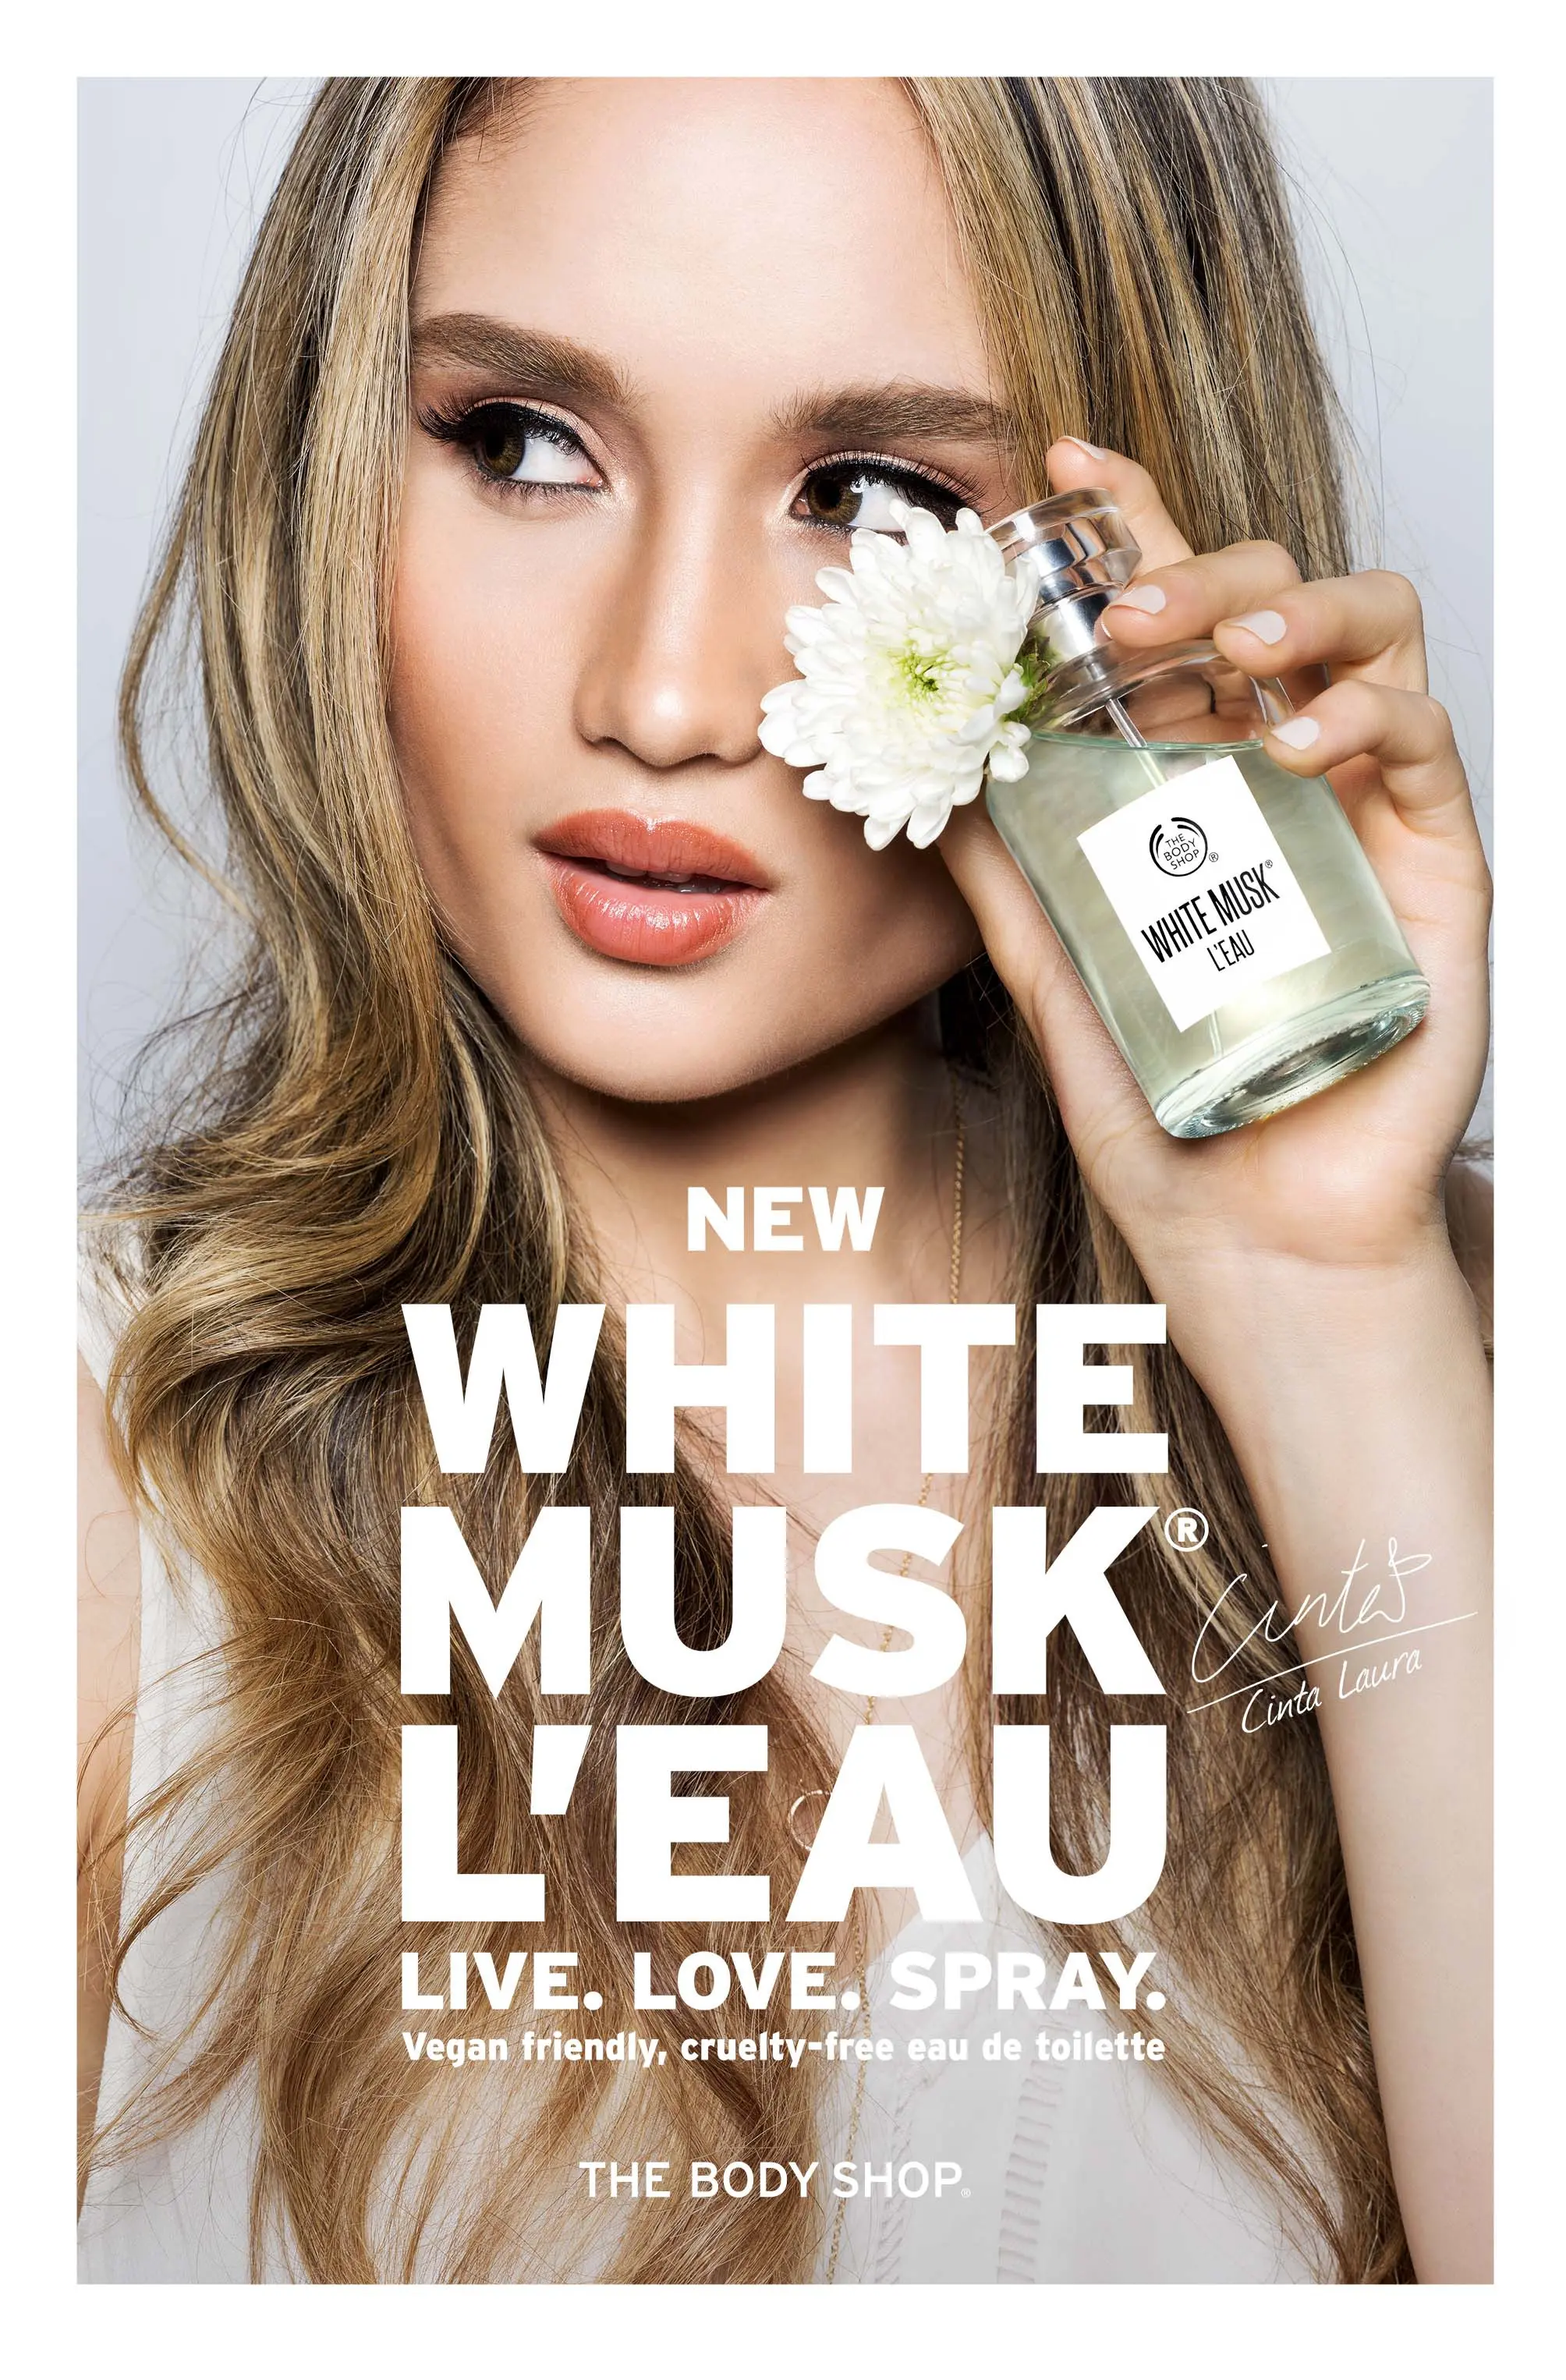 The Body Shop meluncurkan produk terbaru dari rangkaian White Musk, yaitu White Musk L'Eau, sekaligus kampanye Against Animal Testing.